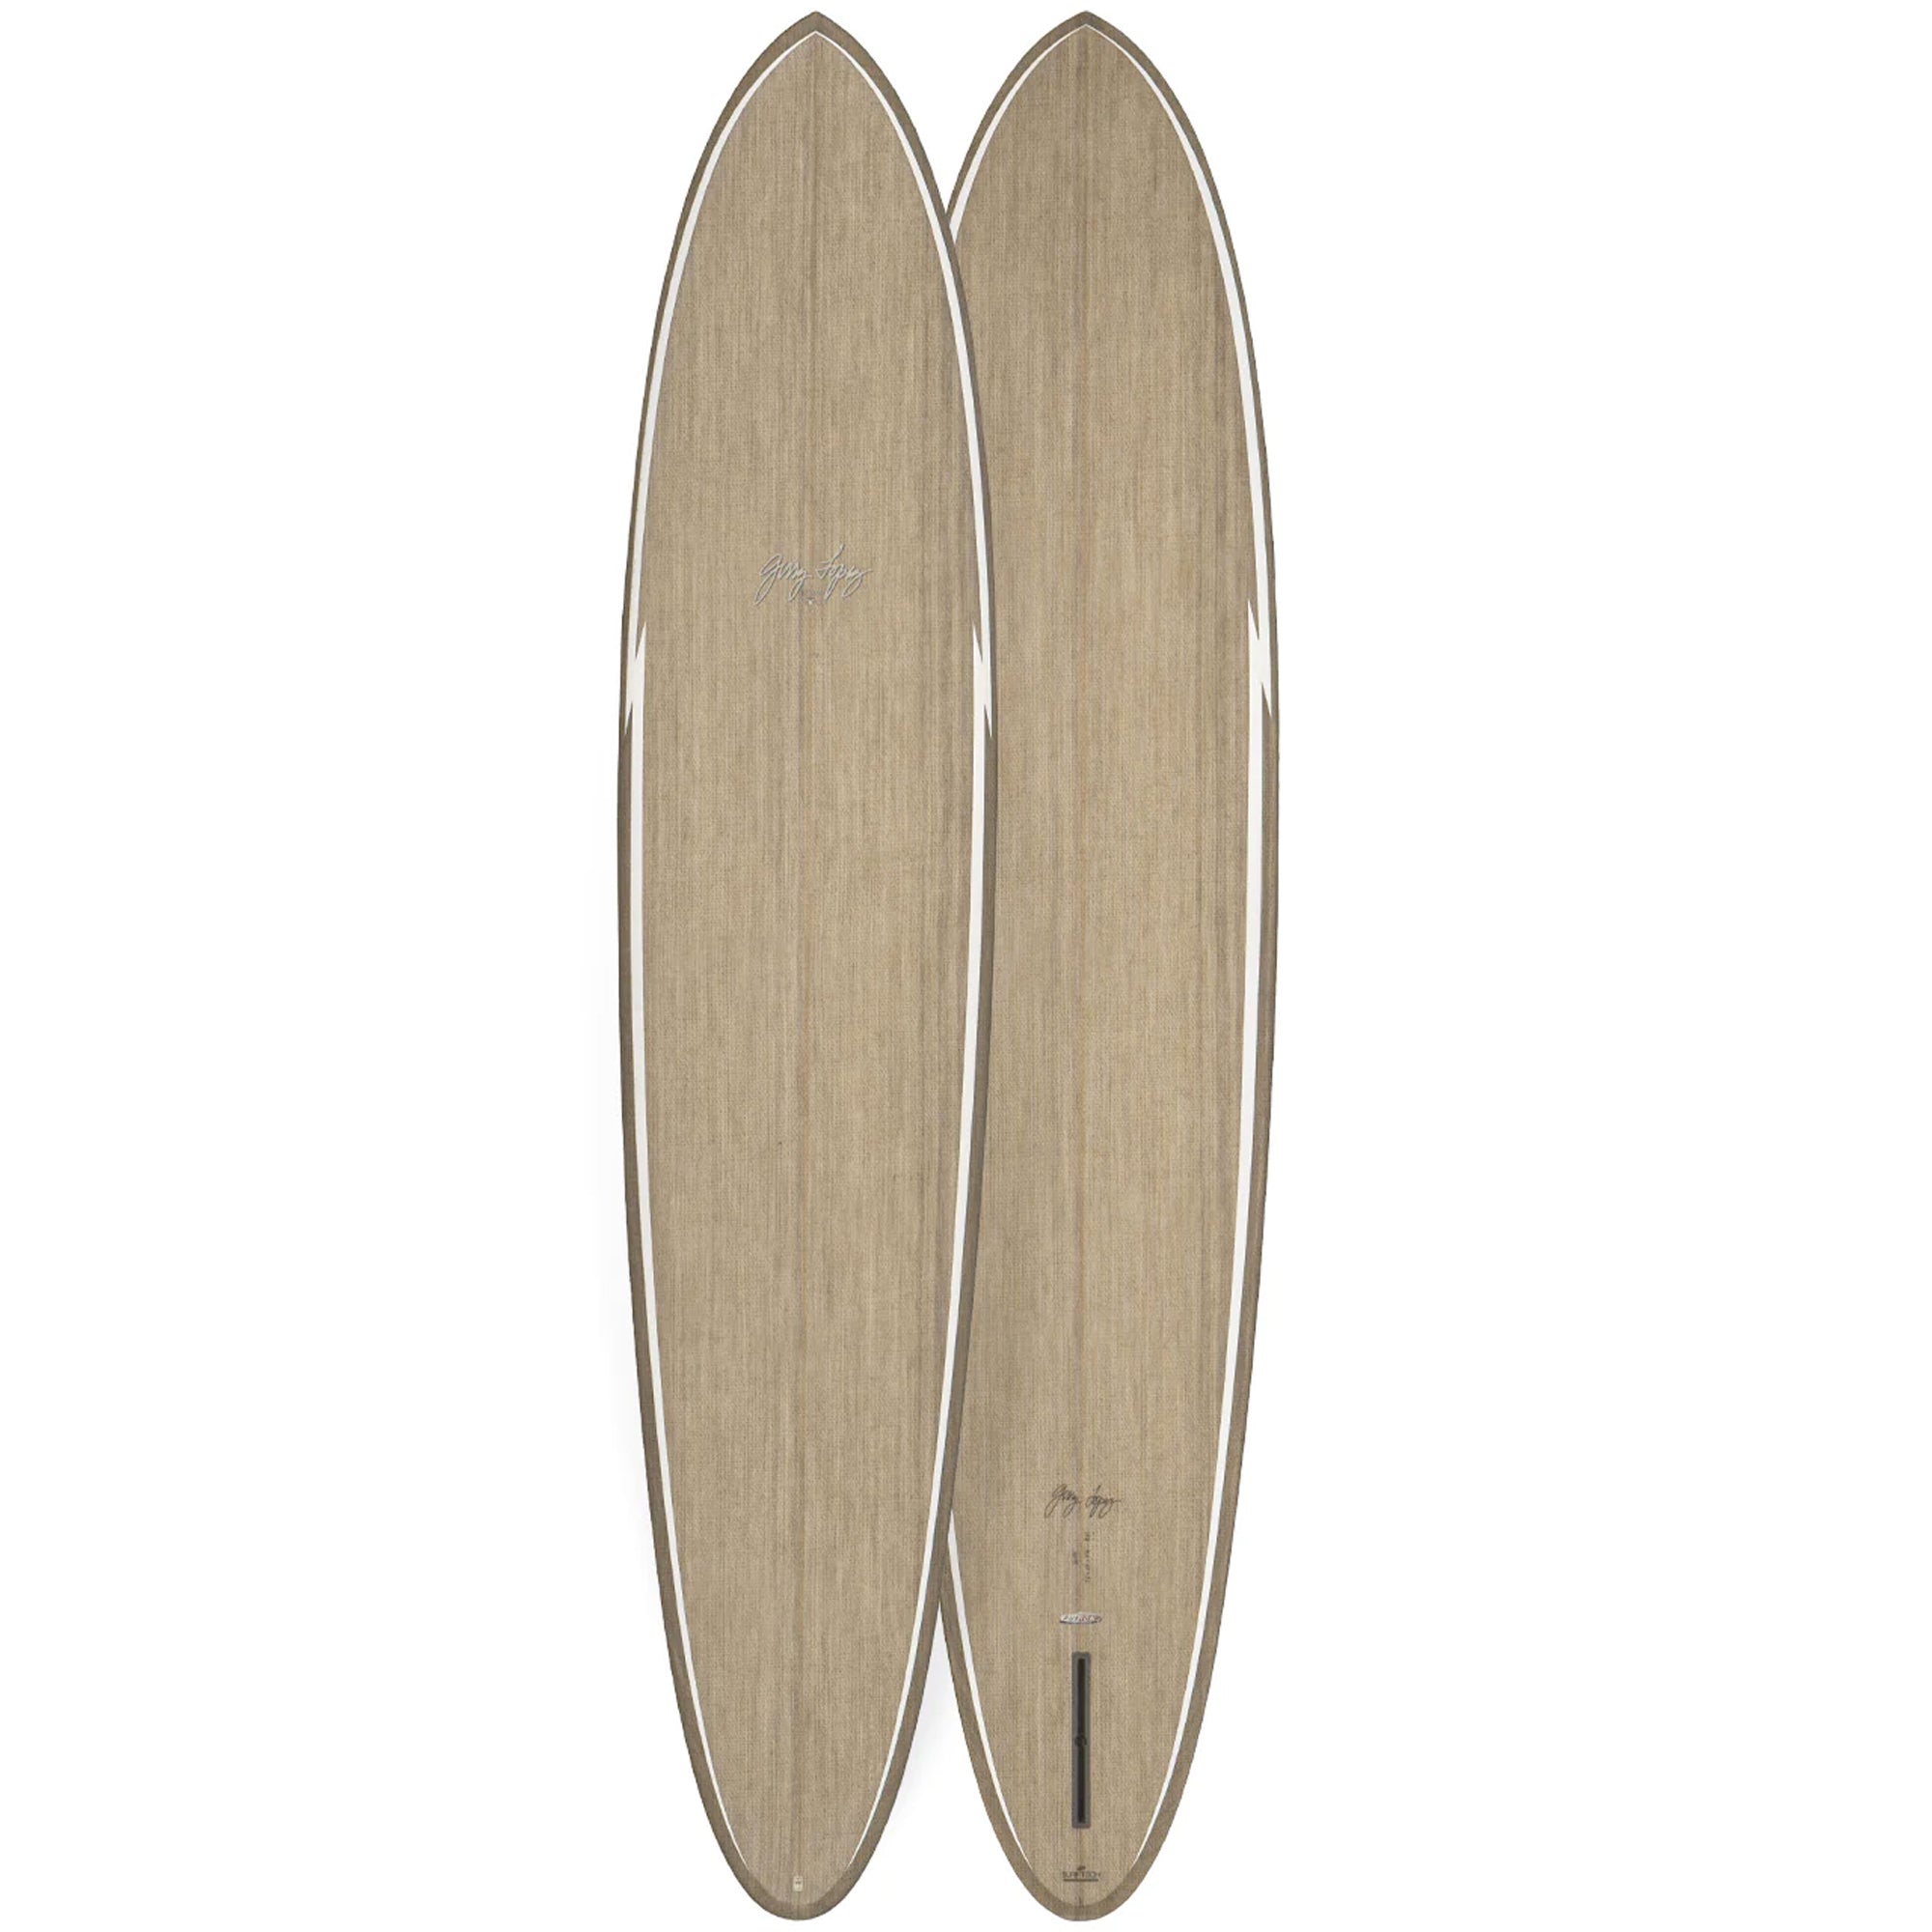 Gerry Lopez Glider Surfboard